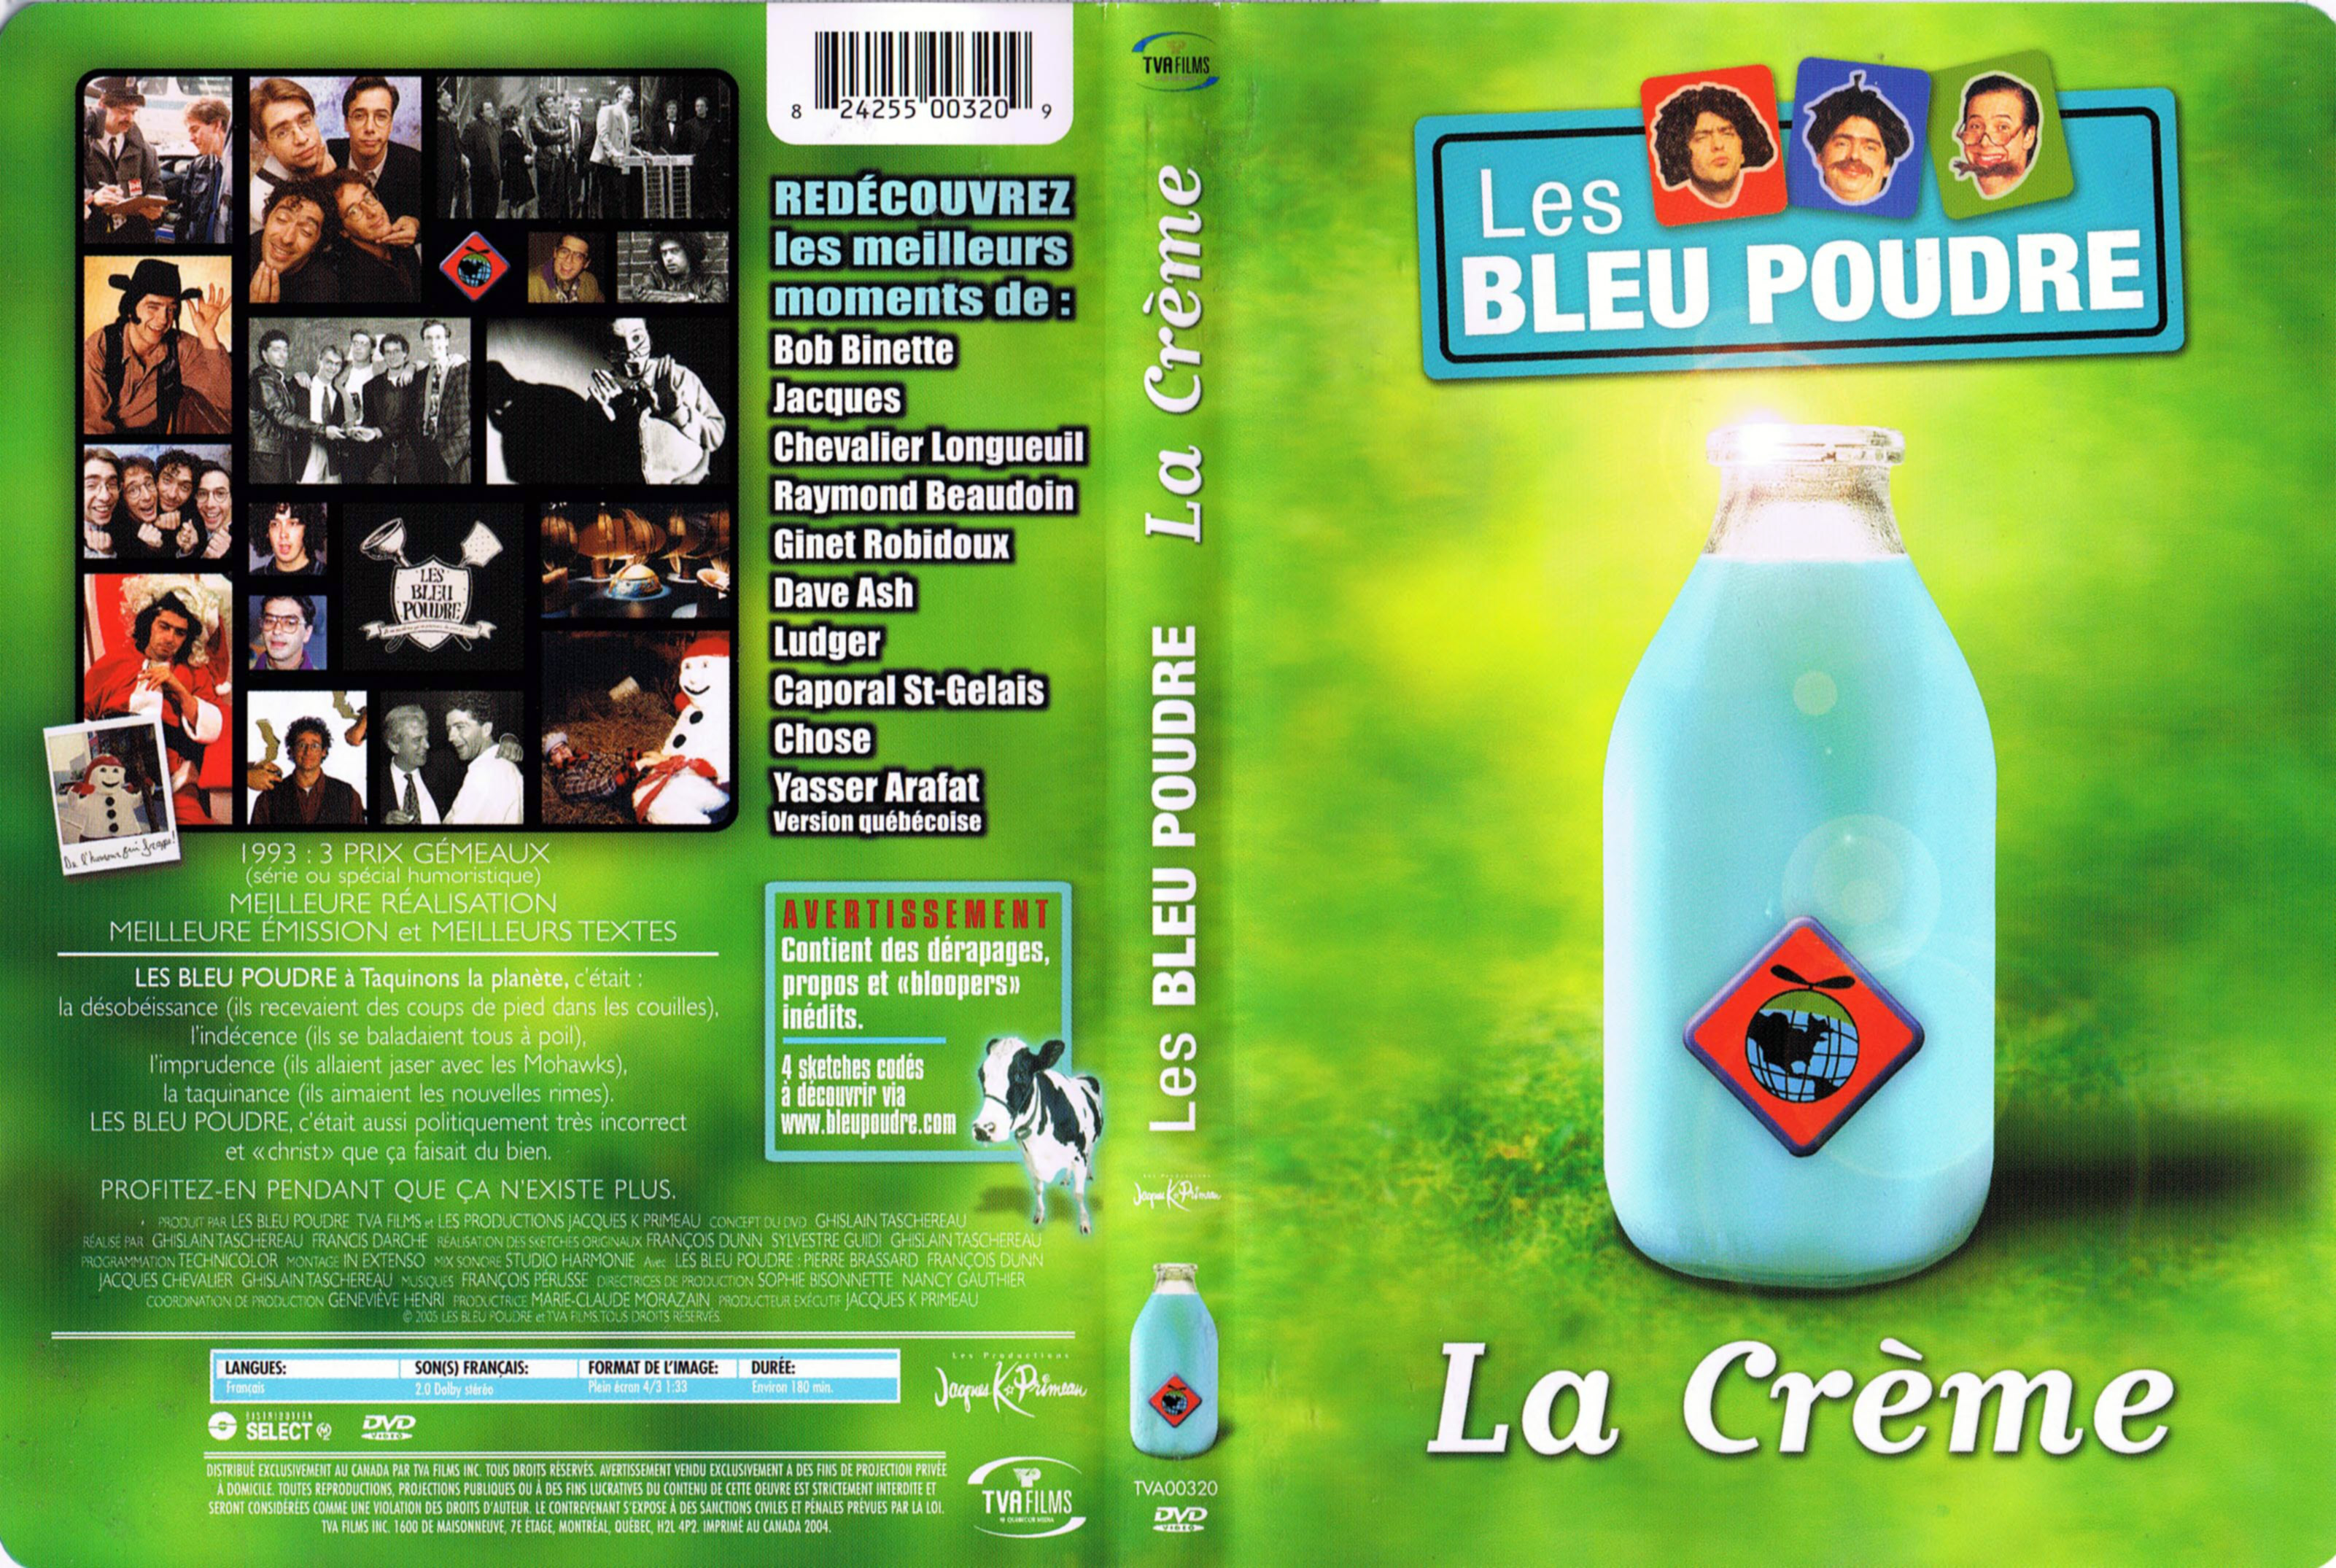 Jaquette DVD Les bleu poudre la creme (Canadienne)